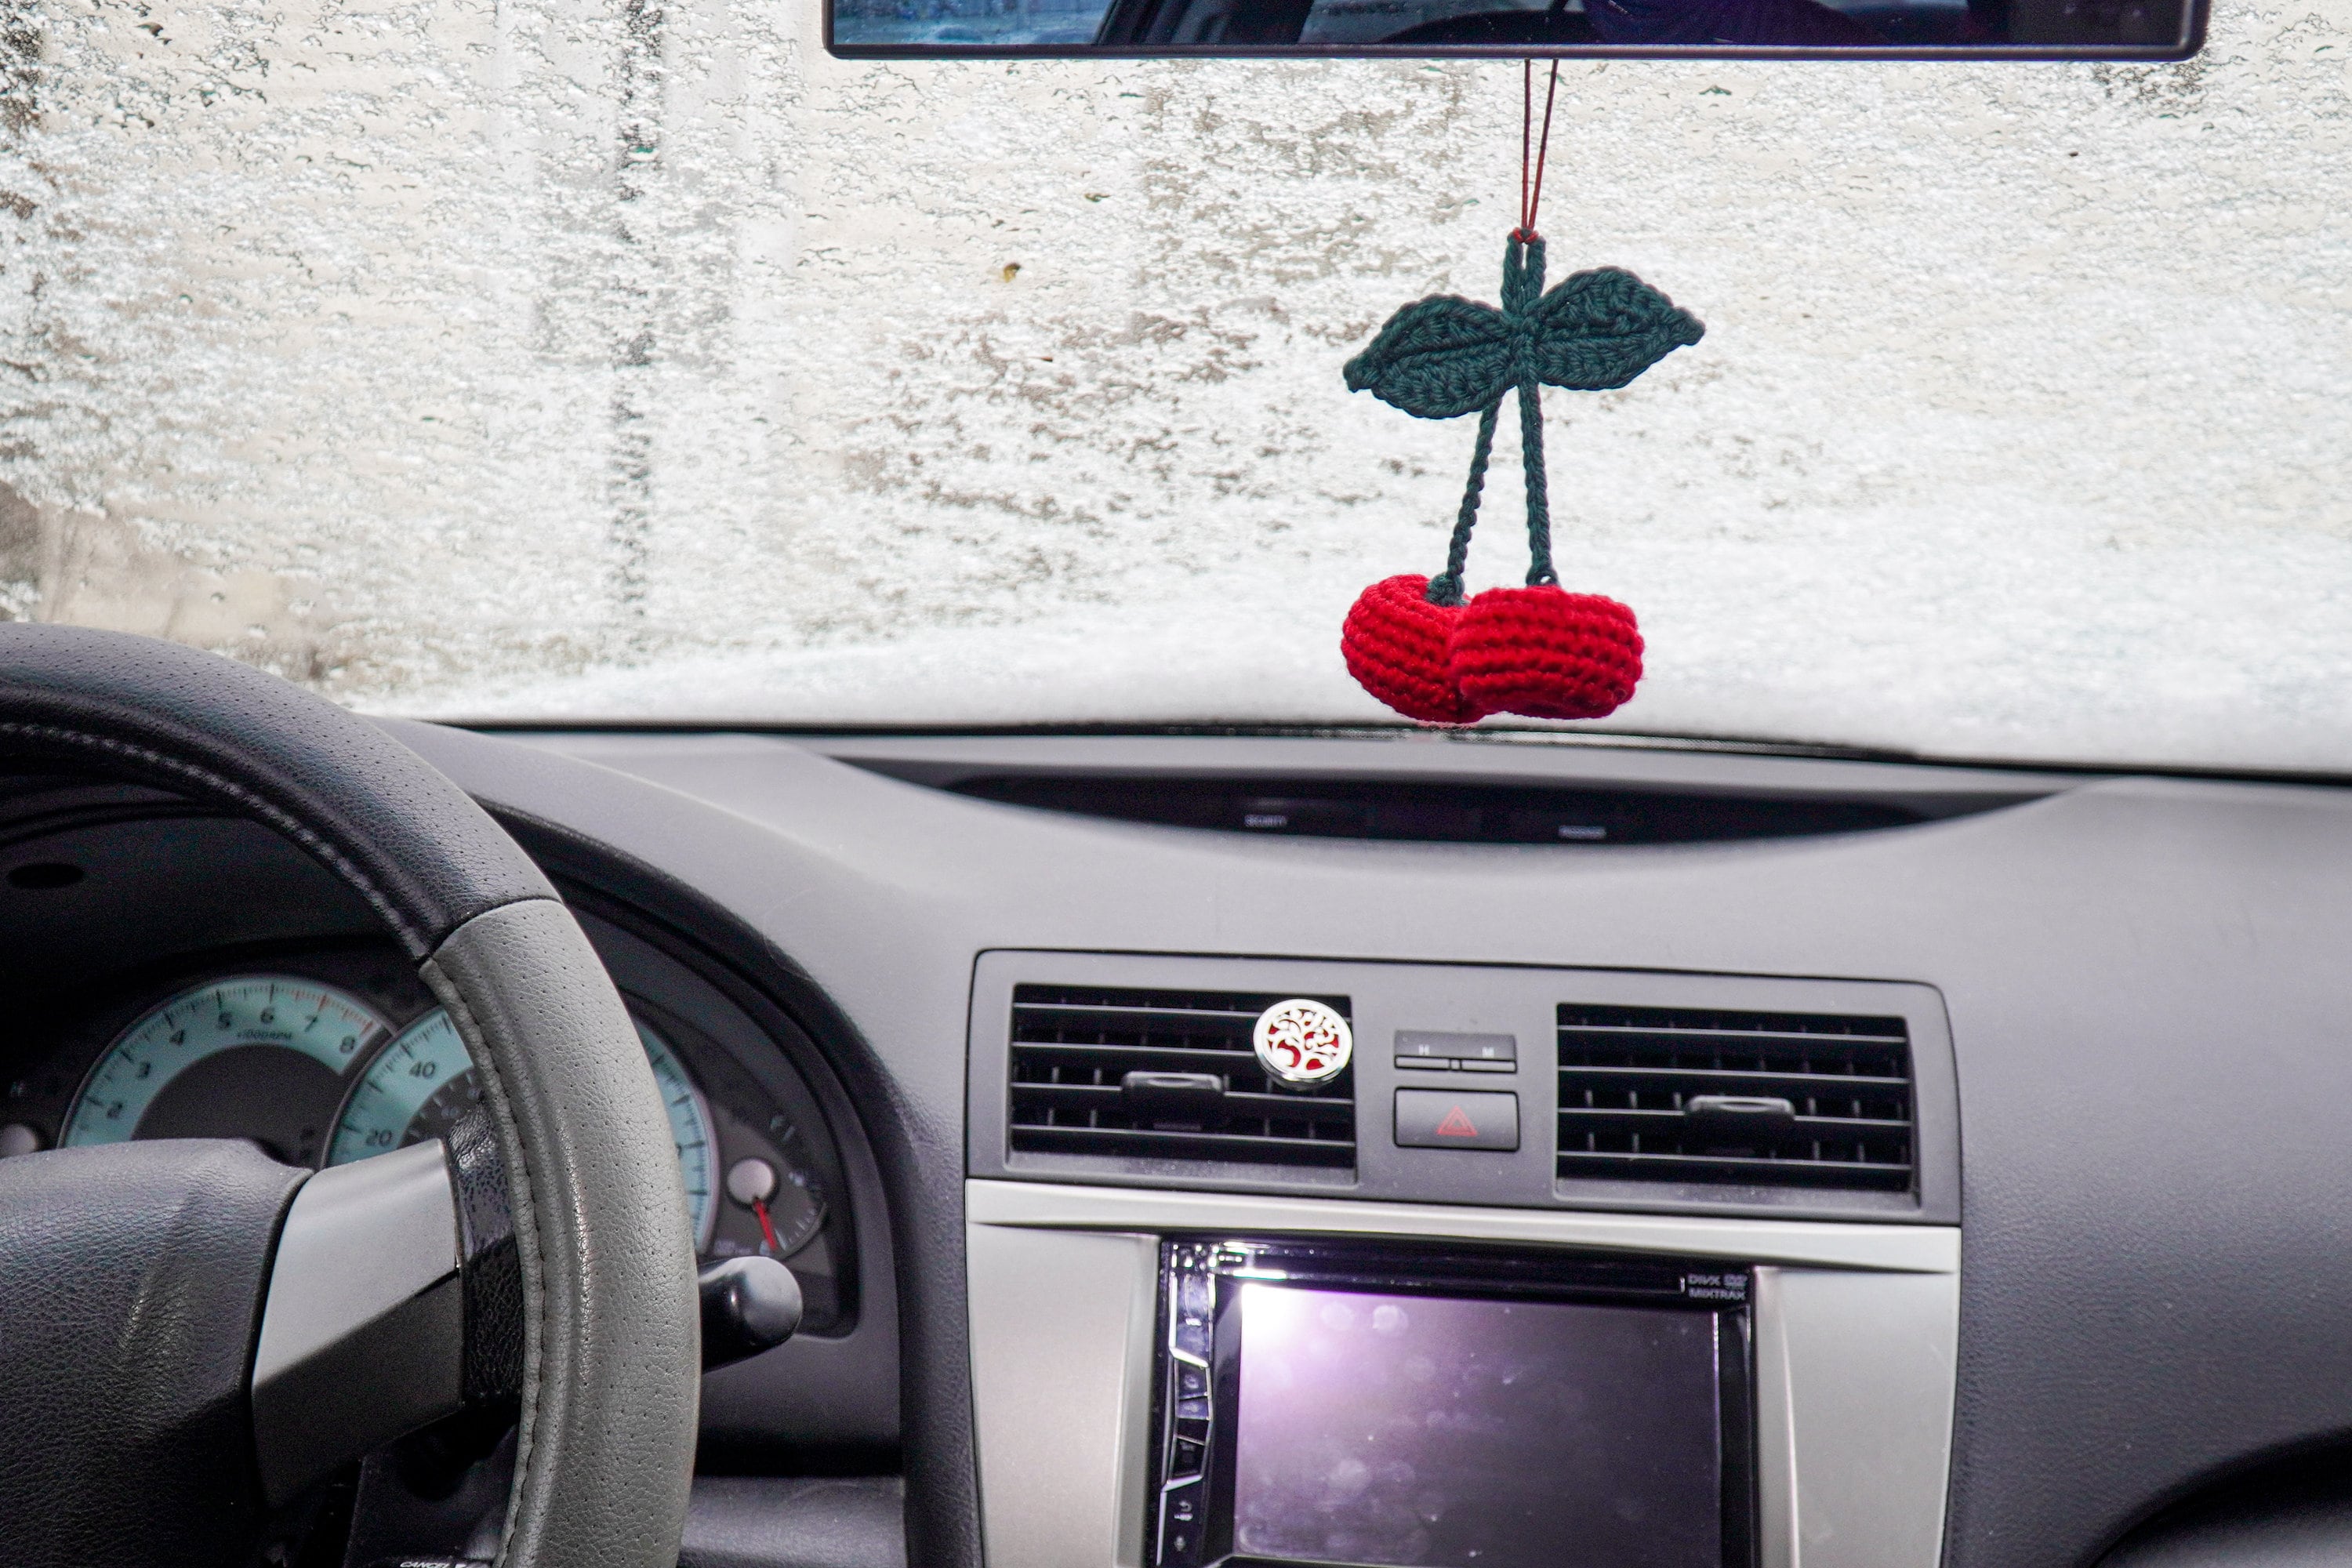  Soot Sprite Cute Car Rearview Mirror, Car Accessories